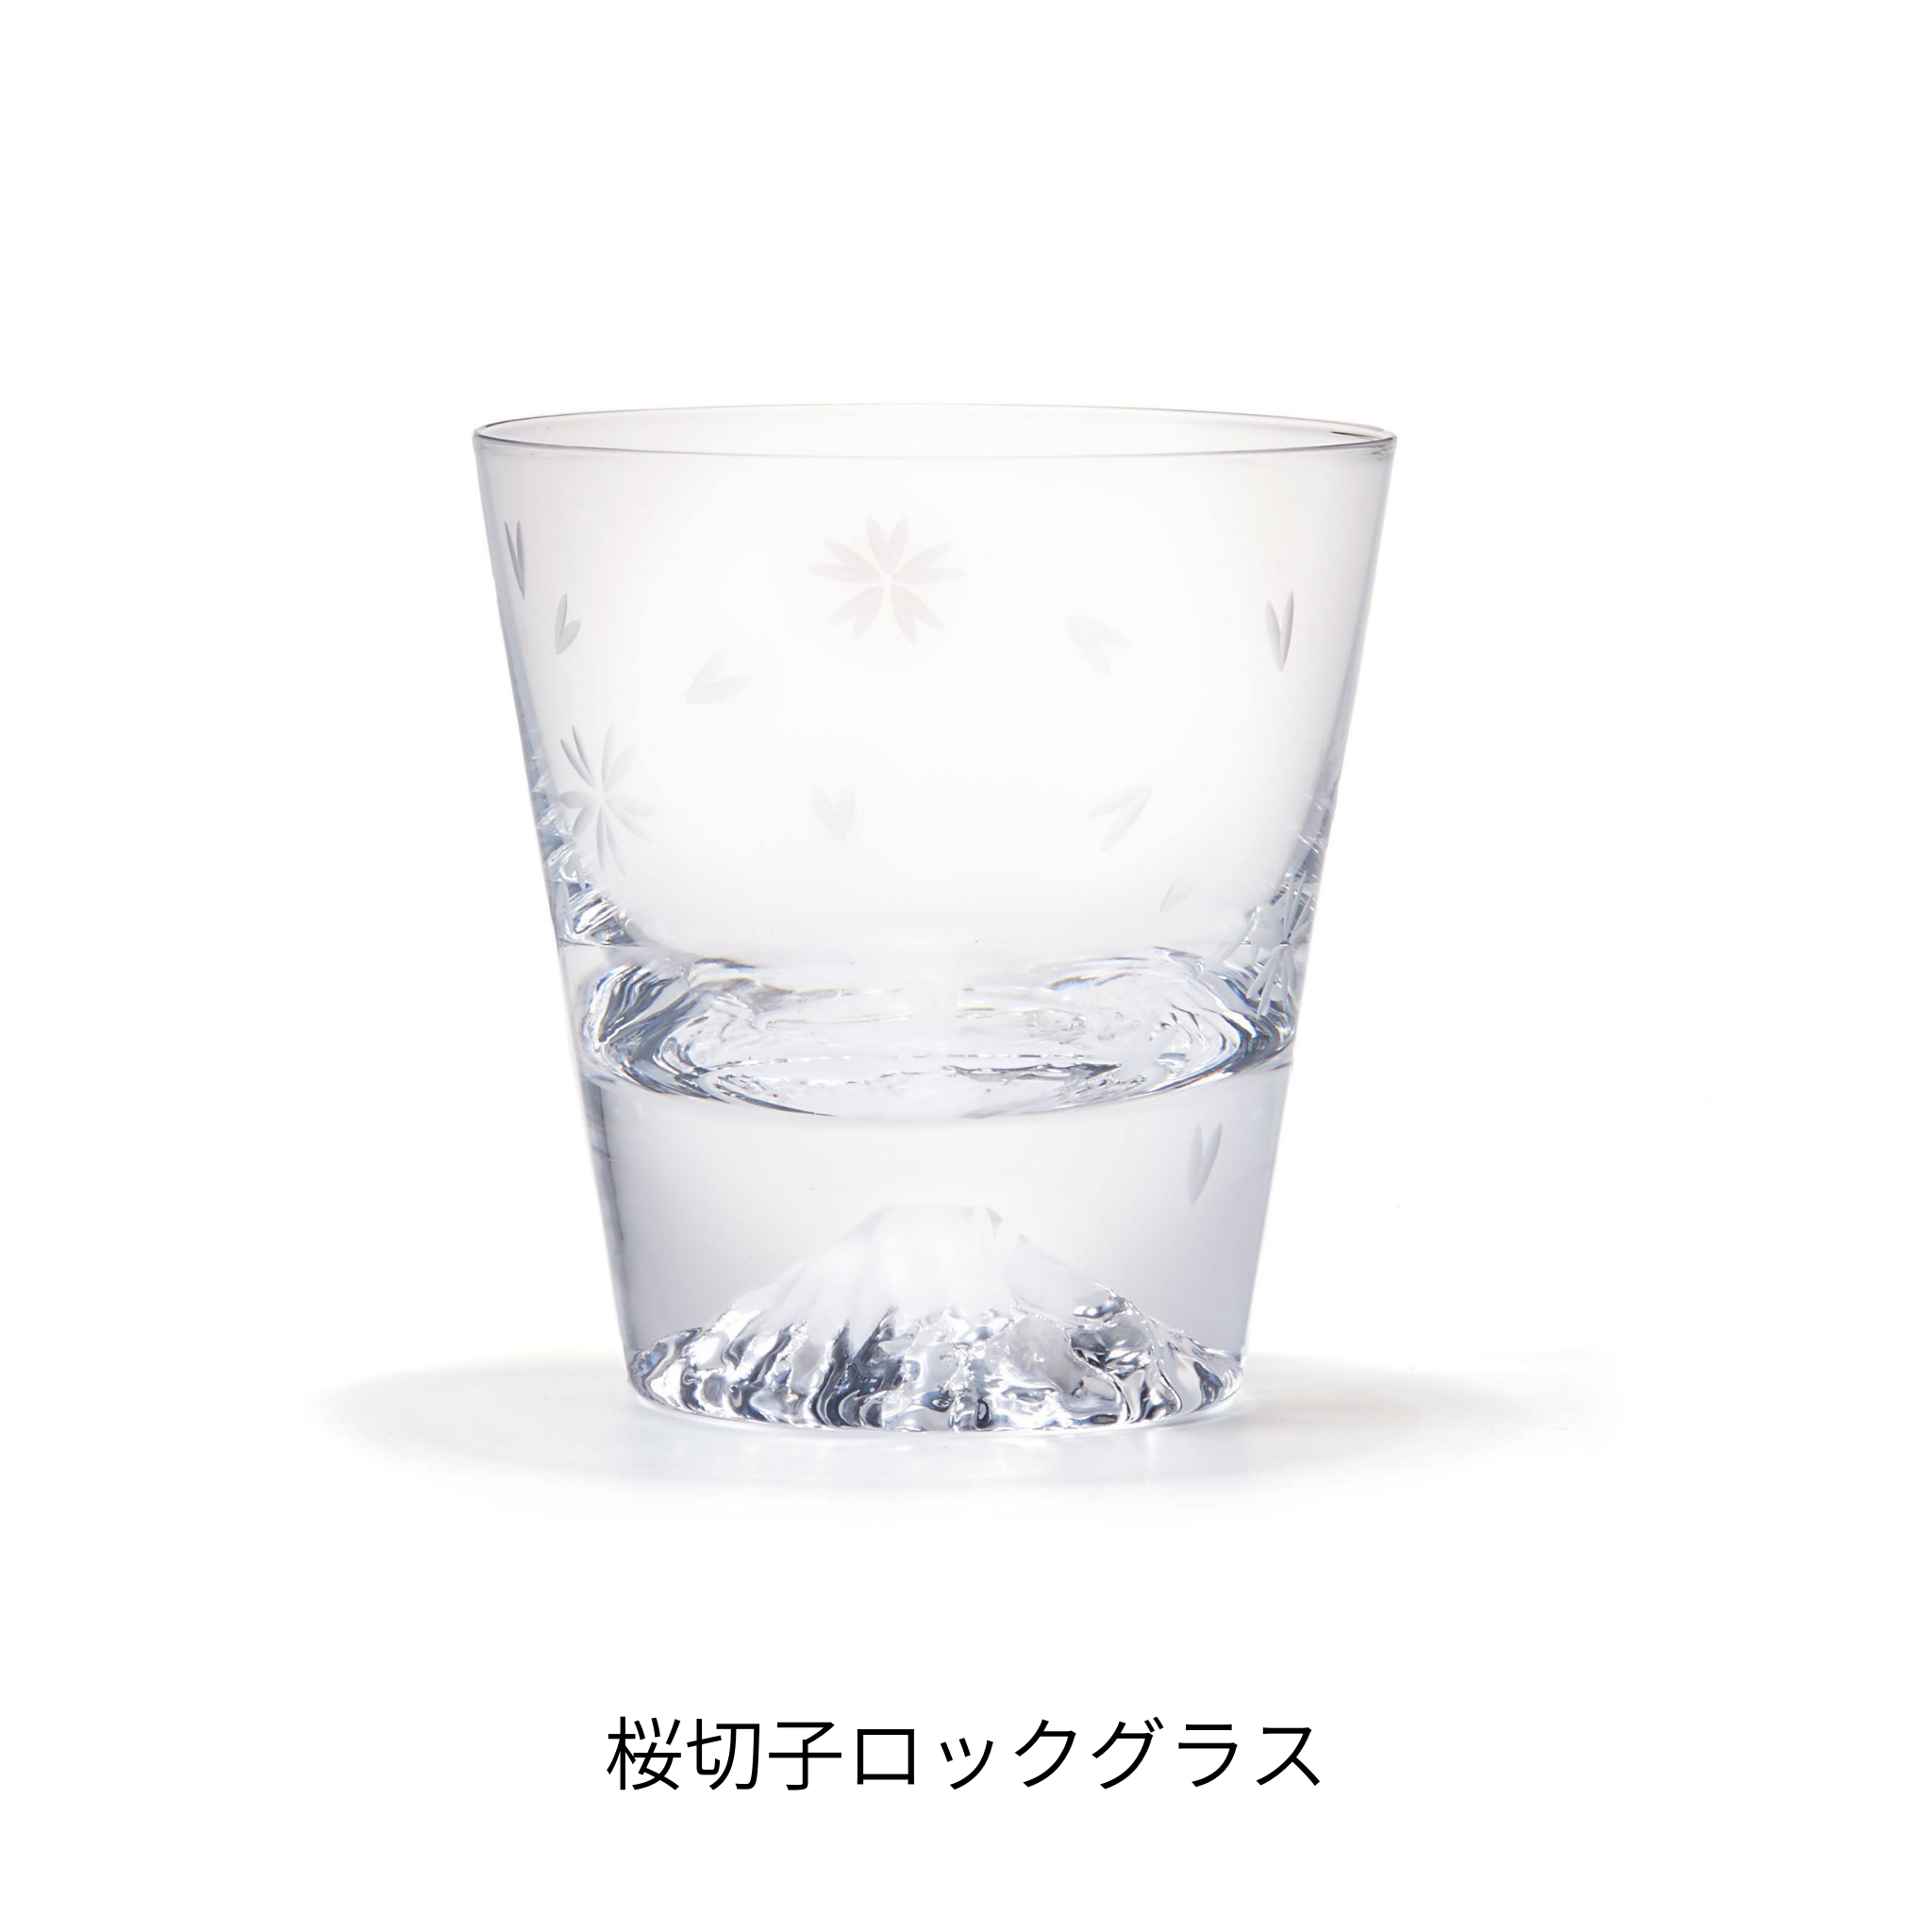 名入れ 富士山グラス ロックグラス 江戸硝子 田島硝子 ガラス 硝子